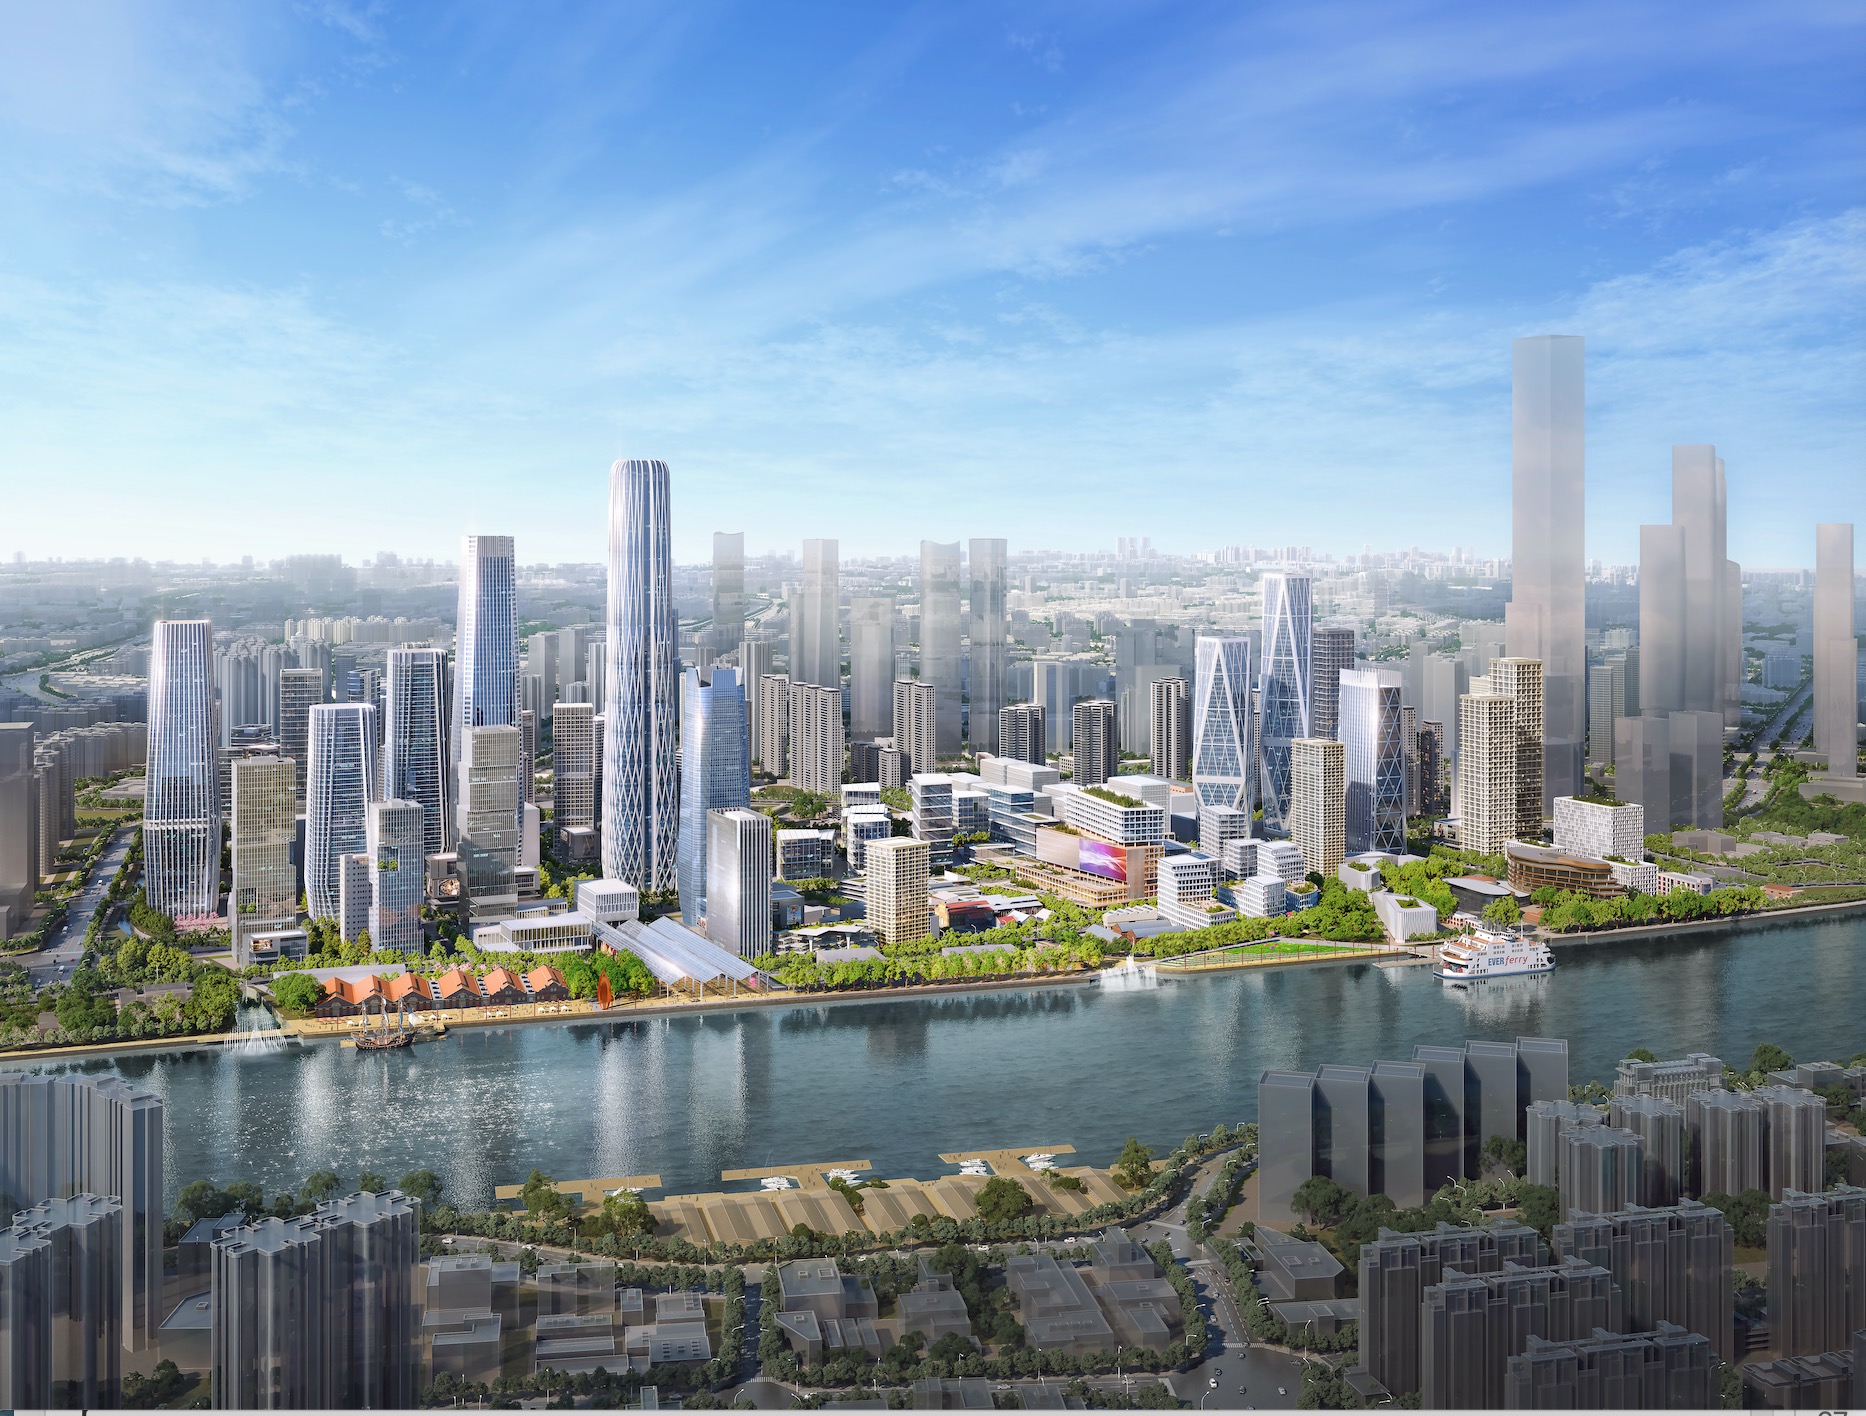 签约20余项目,投资额超500亿元 !新荔湾谱写产城融合新篇章